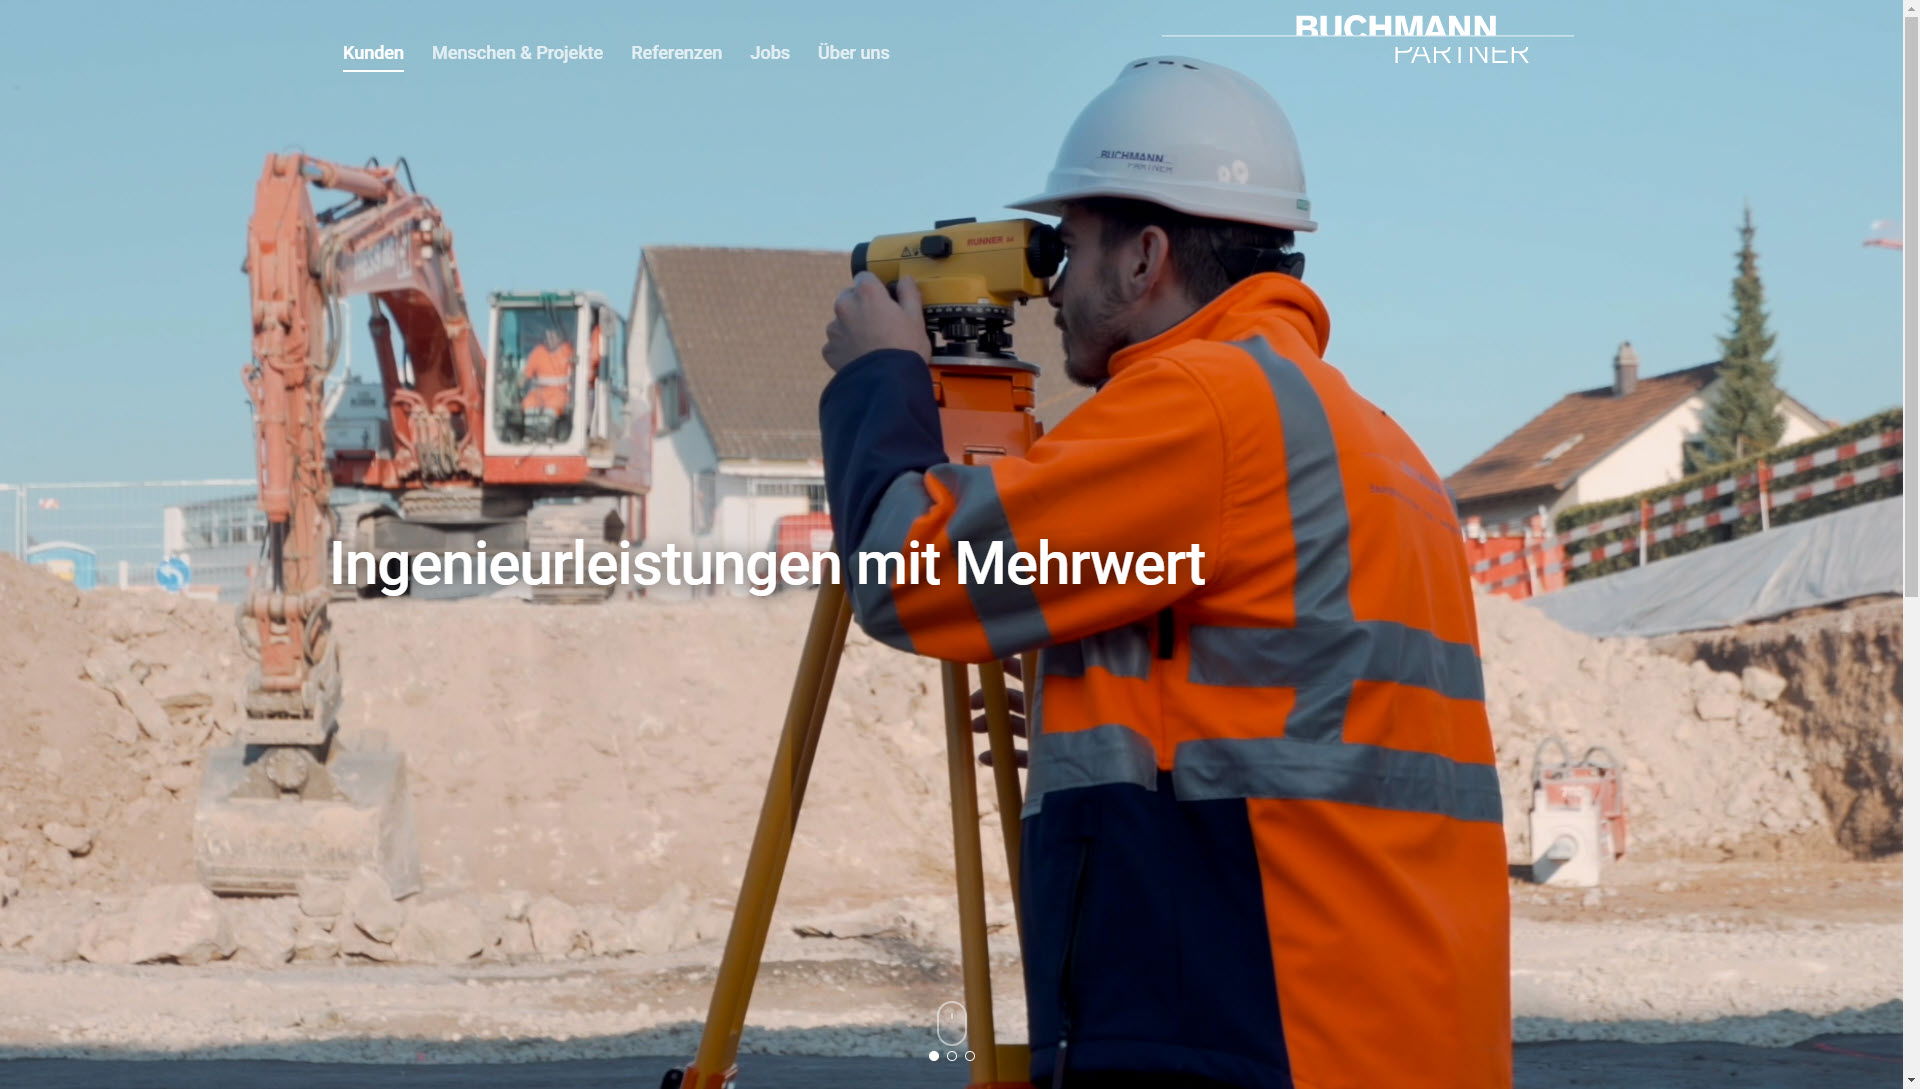 Buchmann Partner AG